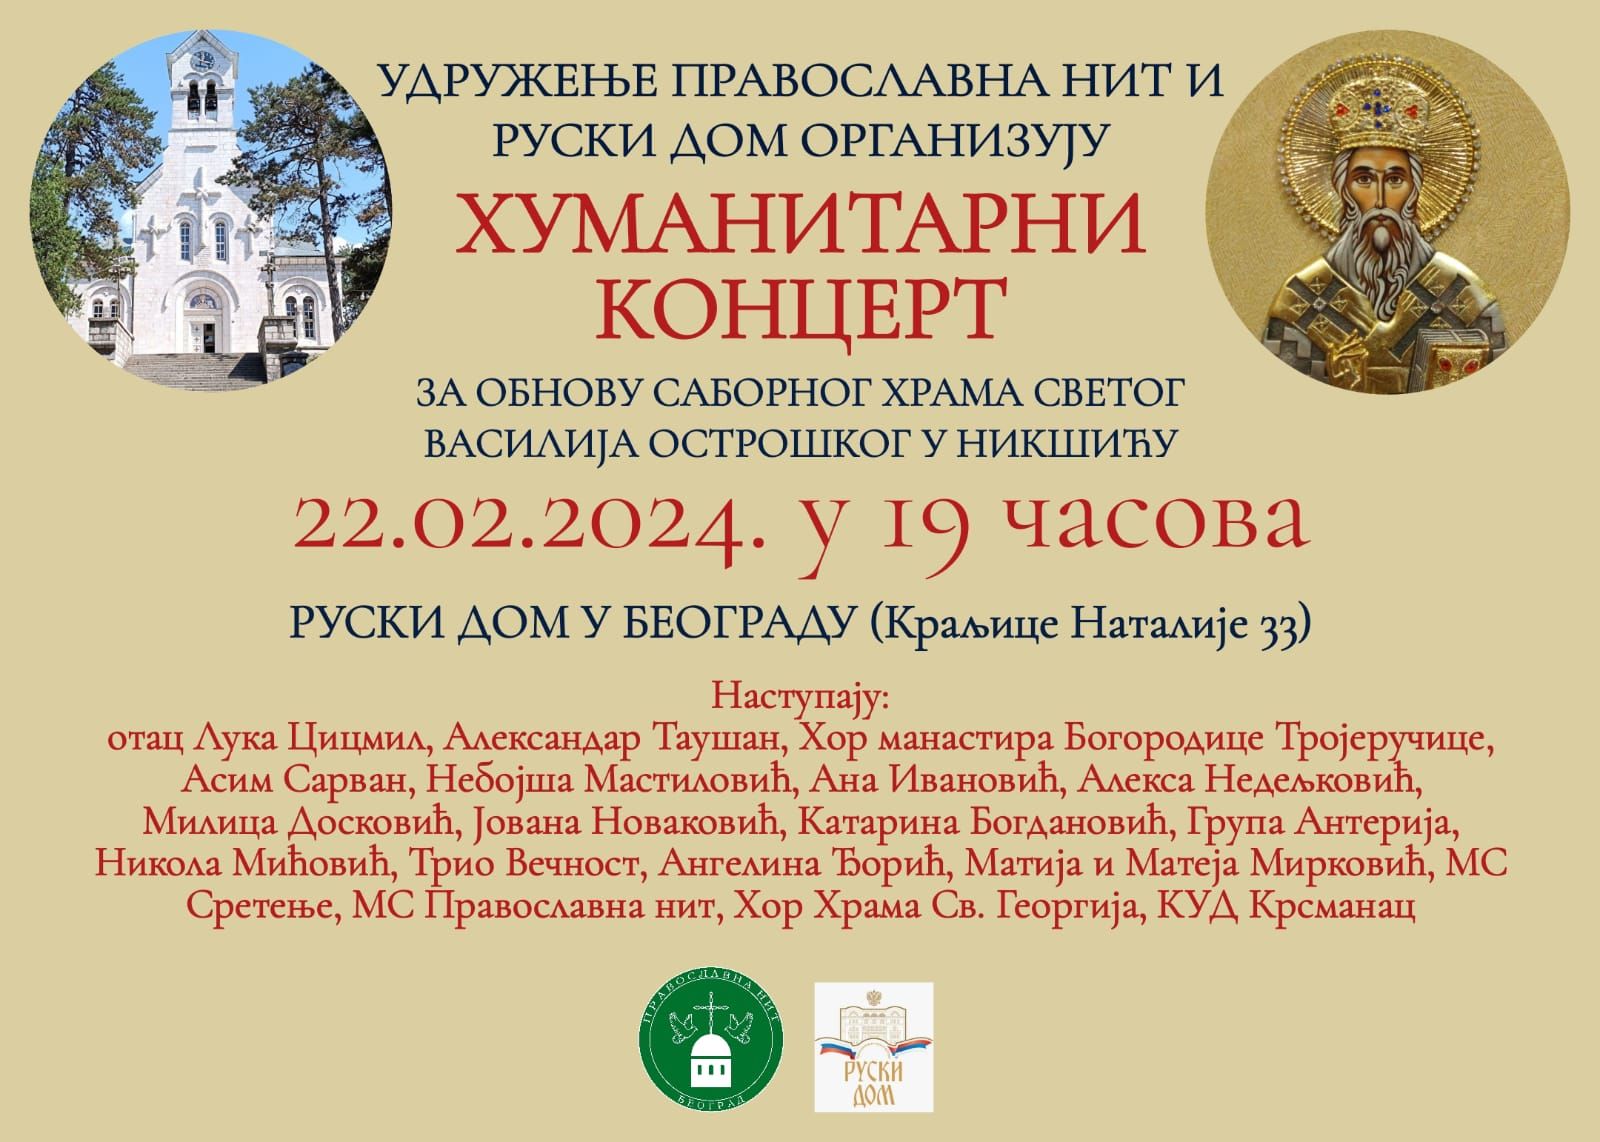 Најава: Хуманитарни концерт за обнову Саборног храма Светог Василија Острошког у Никшићу